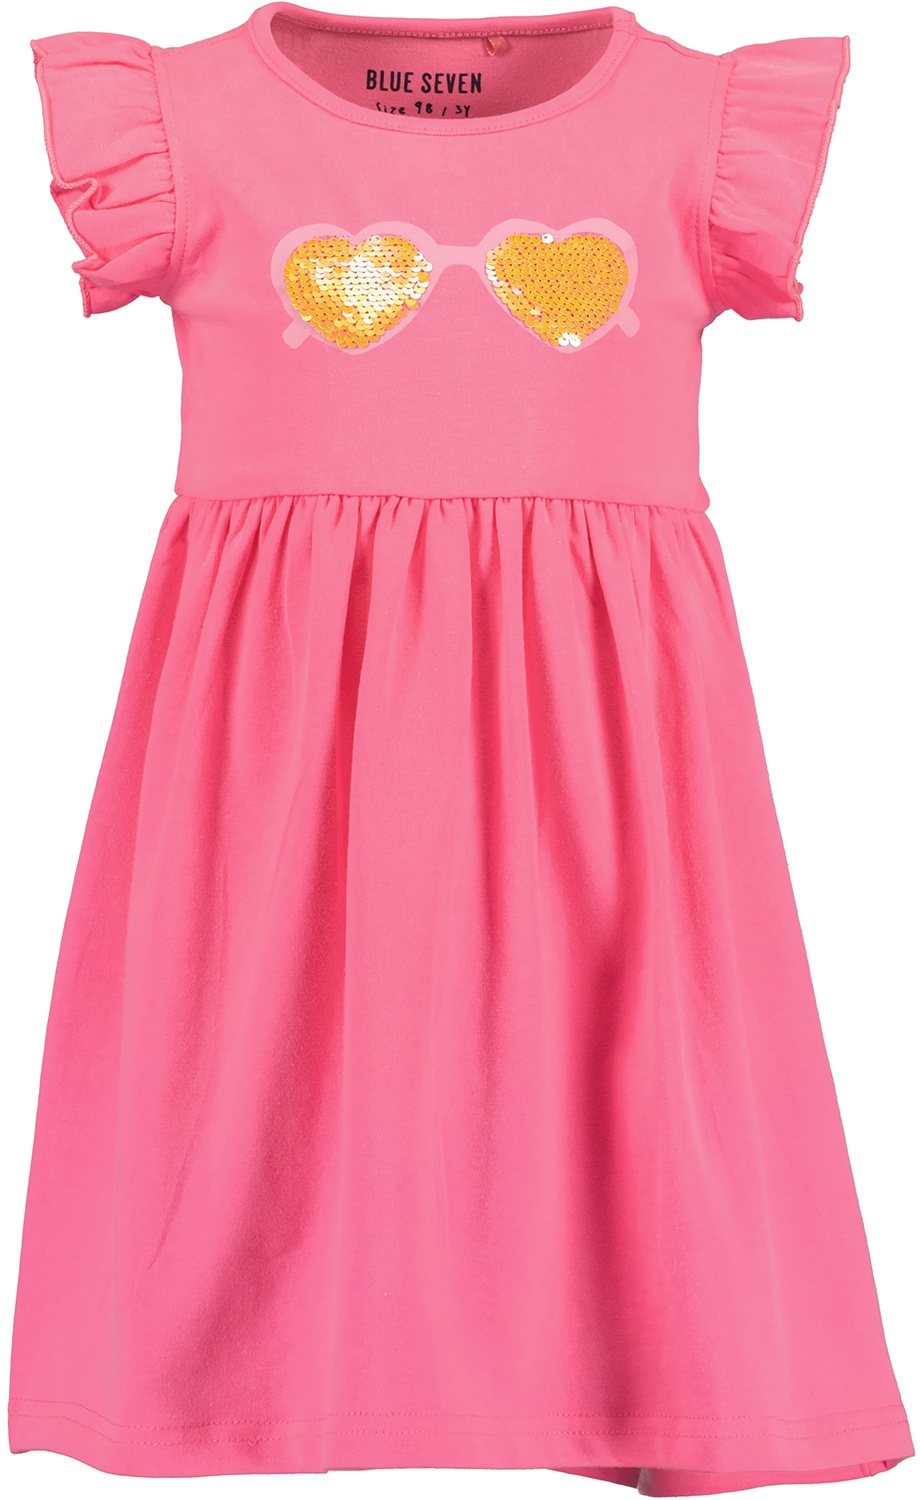 BLUE SEVEN - Kurzarm-Kleid Sunglasses Mit Rüschenärmeln In Pink  Gr.92, 92